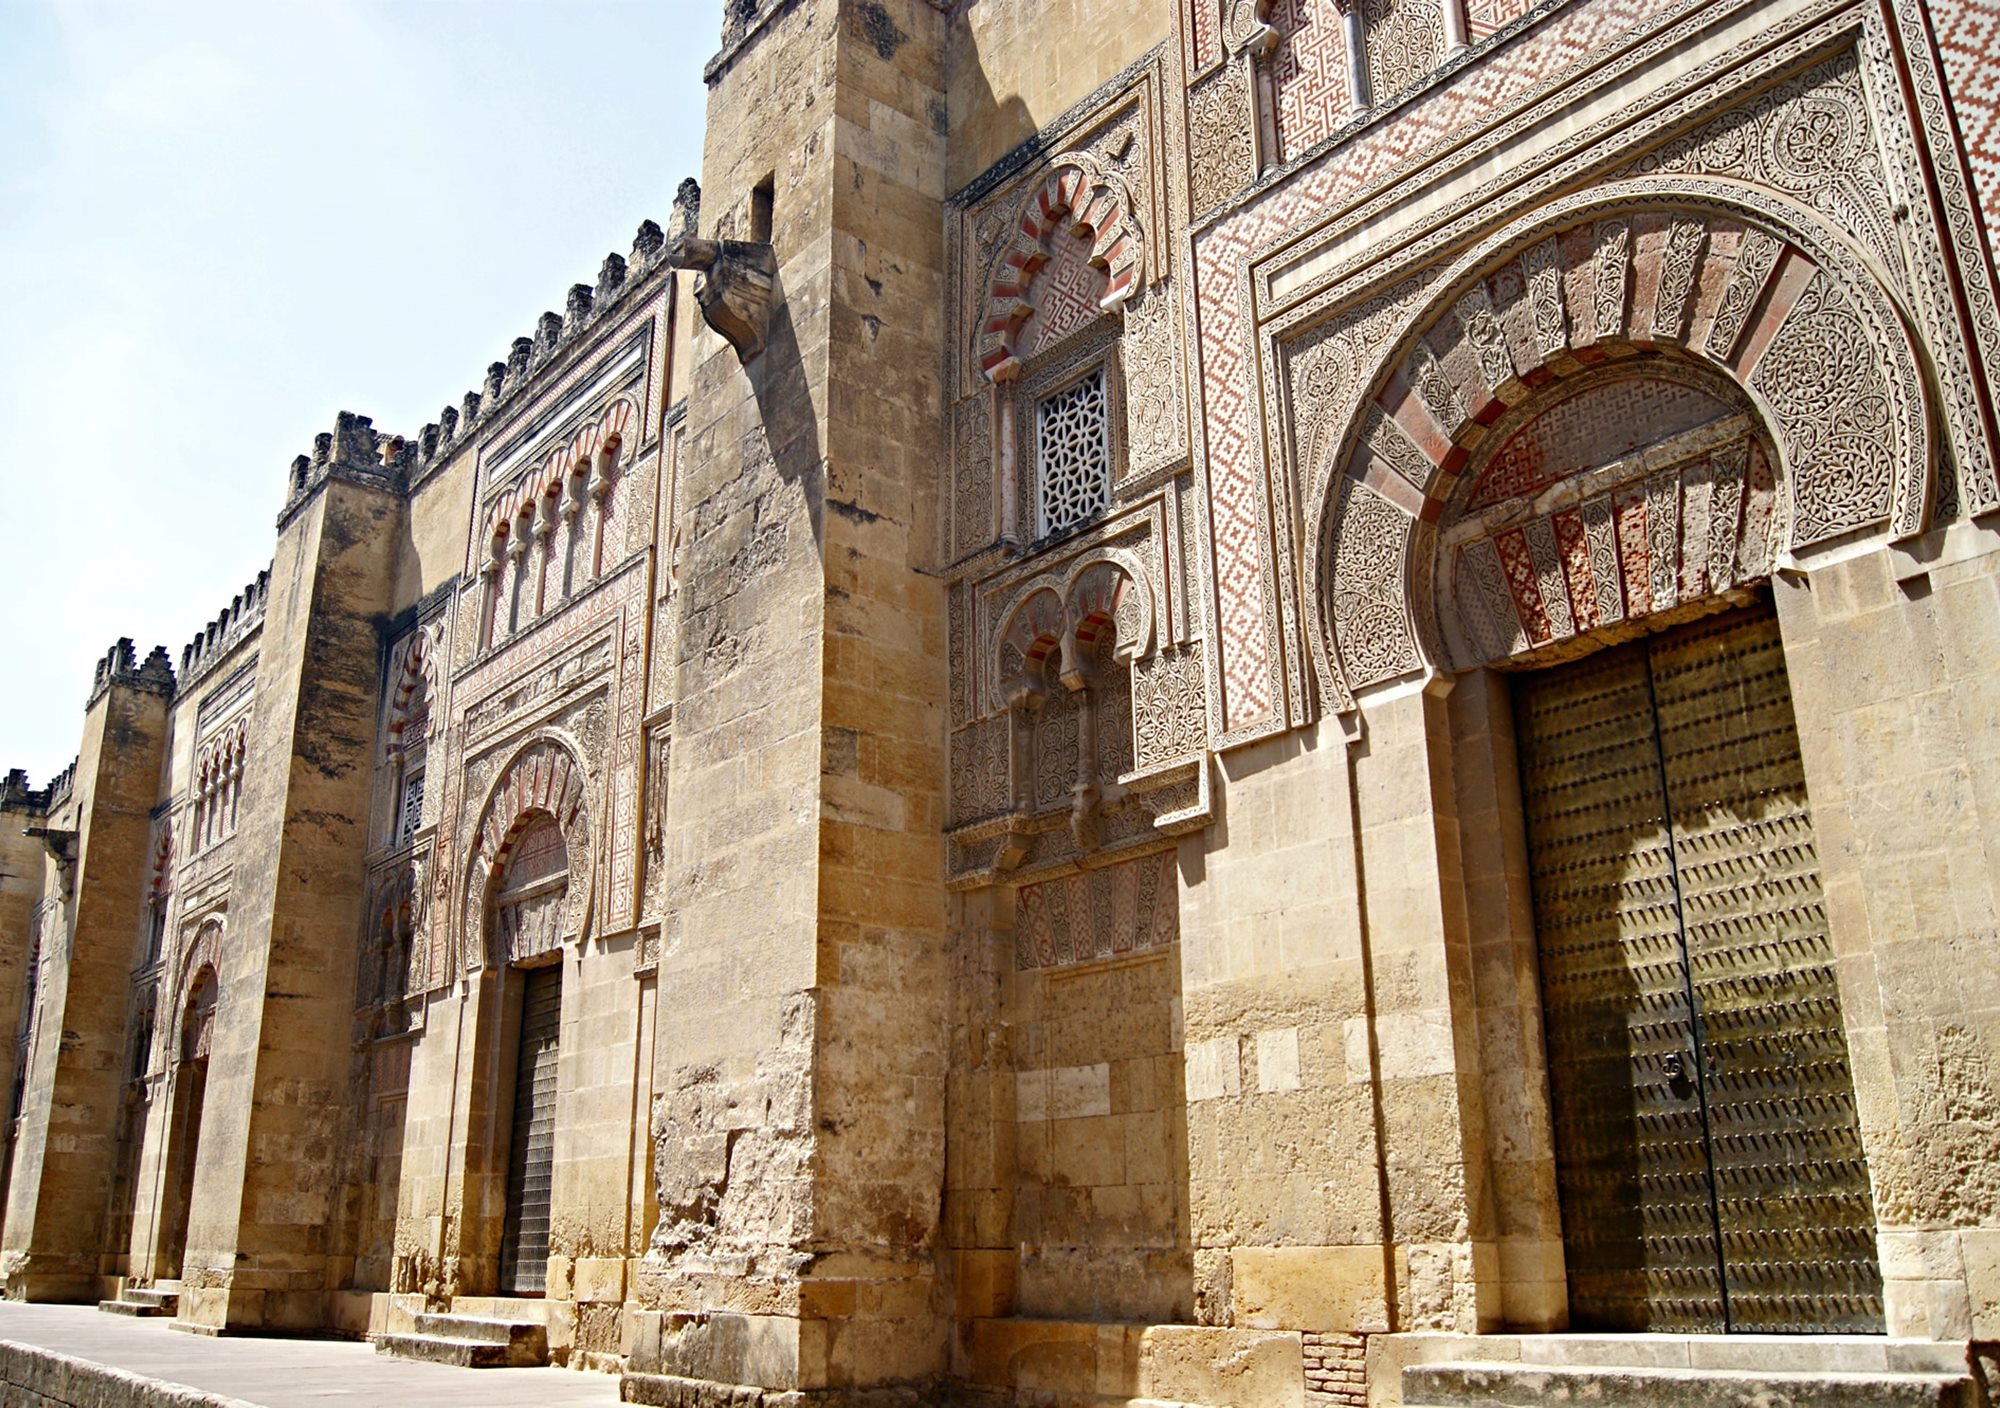 Visitar Córdoba y Mezquita desde Málaga, visitas guiadas tours guiados excursión excursiones de un dia ida y vuelta con guía incluido traslados transporte bus